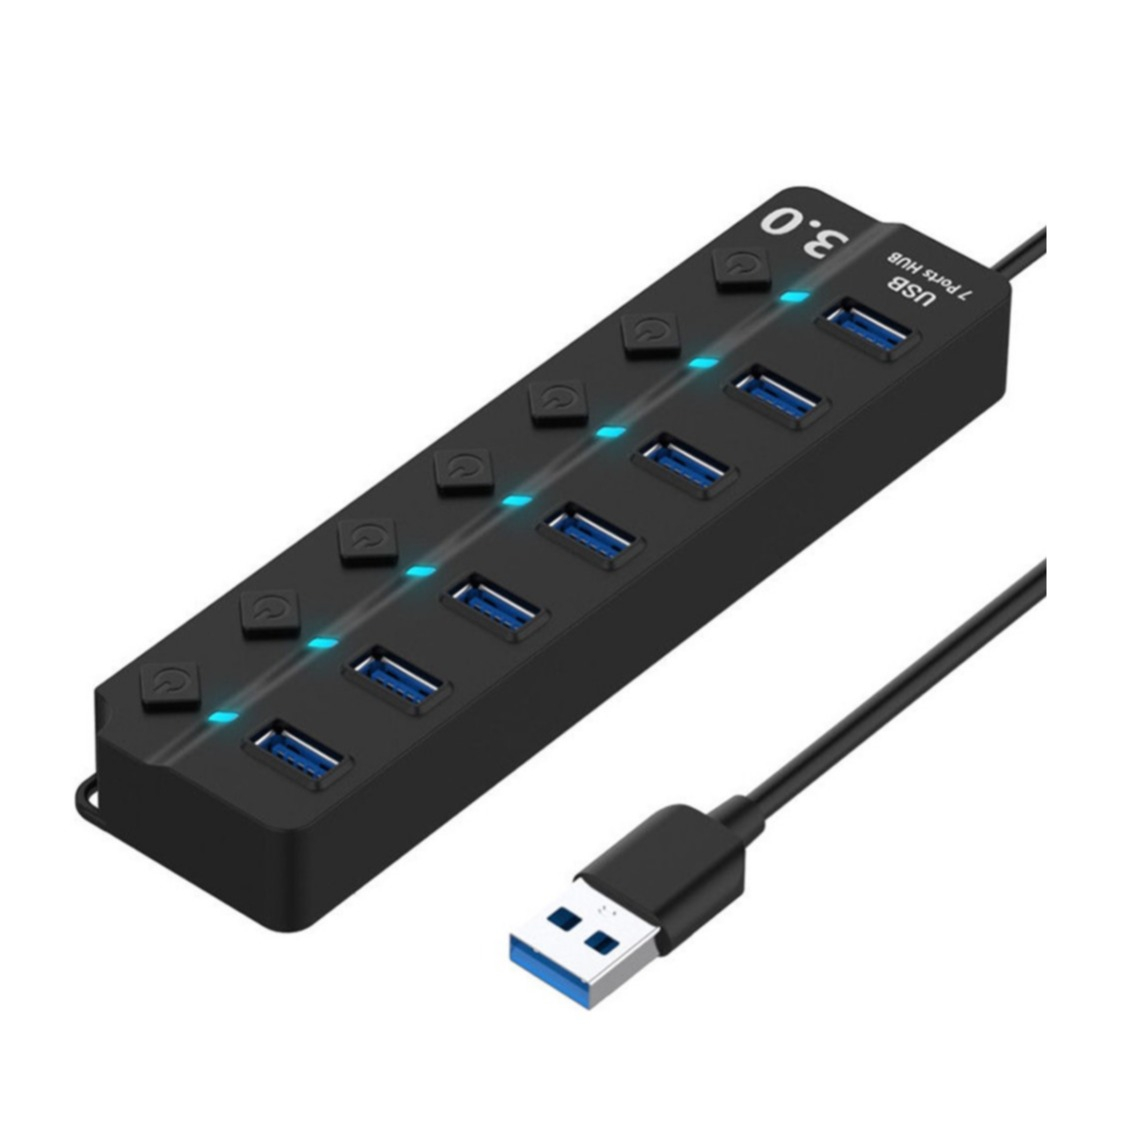 Image of (27cm) 7-fach USB 3.0 Hub Adapter mit USB Port Steuerung Tastenschalter 5GB/s - Schwarz bei Apfelkiste.ch